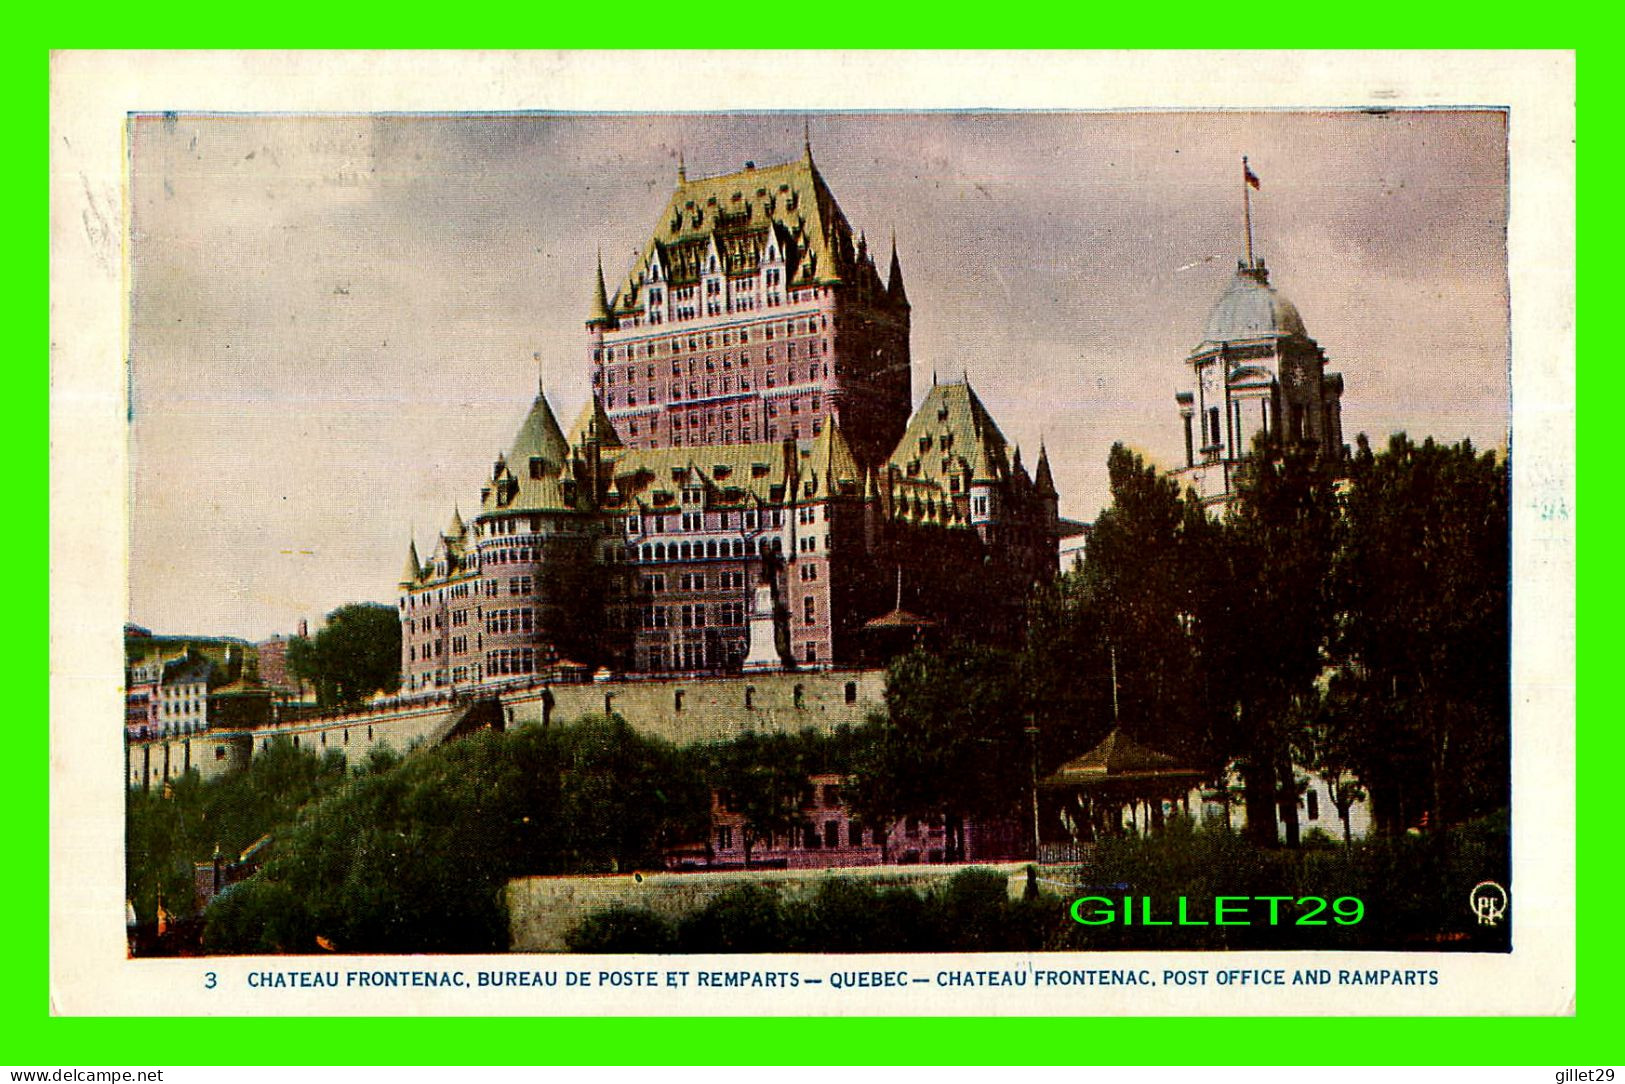 QUÉBEC - CHÂTEAU FRONTENAC, BUREAU DE POSTE ET REMPARTS - QPE - LORENZO AUDET ENR. ÉDITEUR  No 3 - CIRCULÉE EN 1954 - - Québec - Château Frontenac